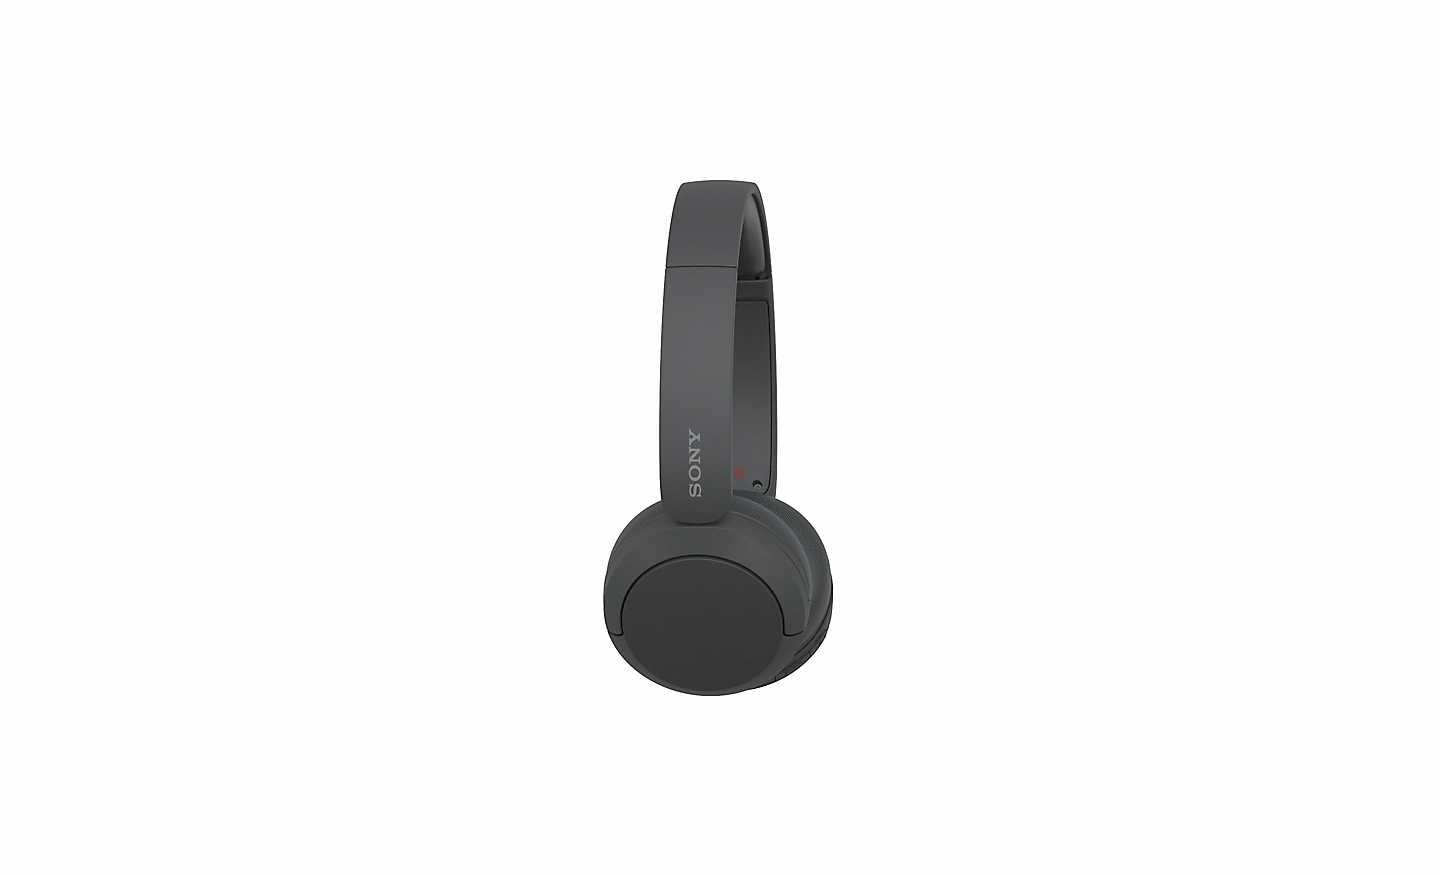 Bild der schwarzen WH-CH520 Kopfhörer von Sony auf weißem Hintergrund